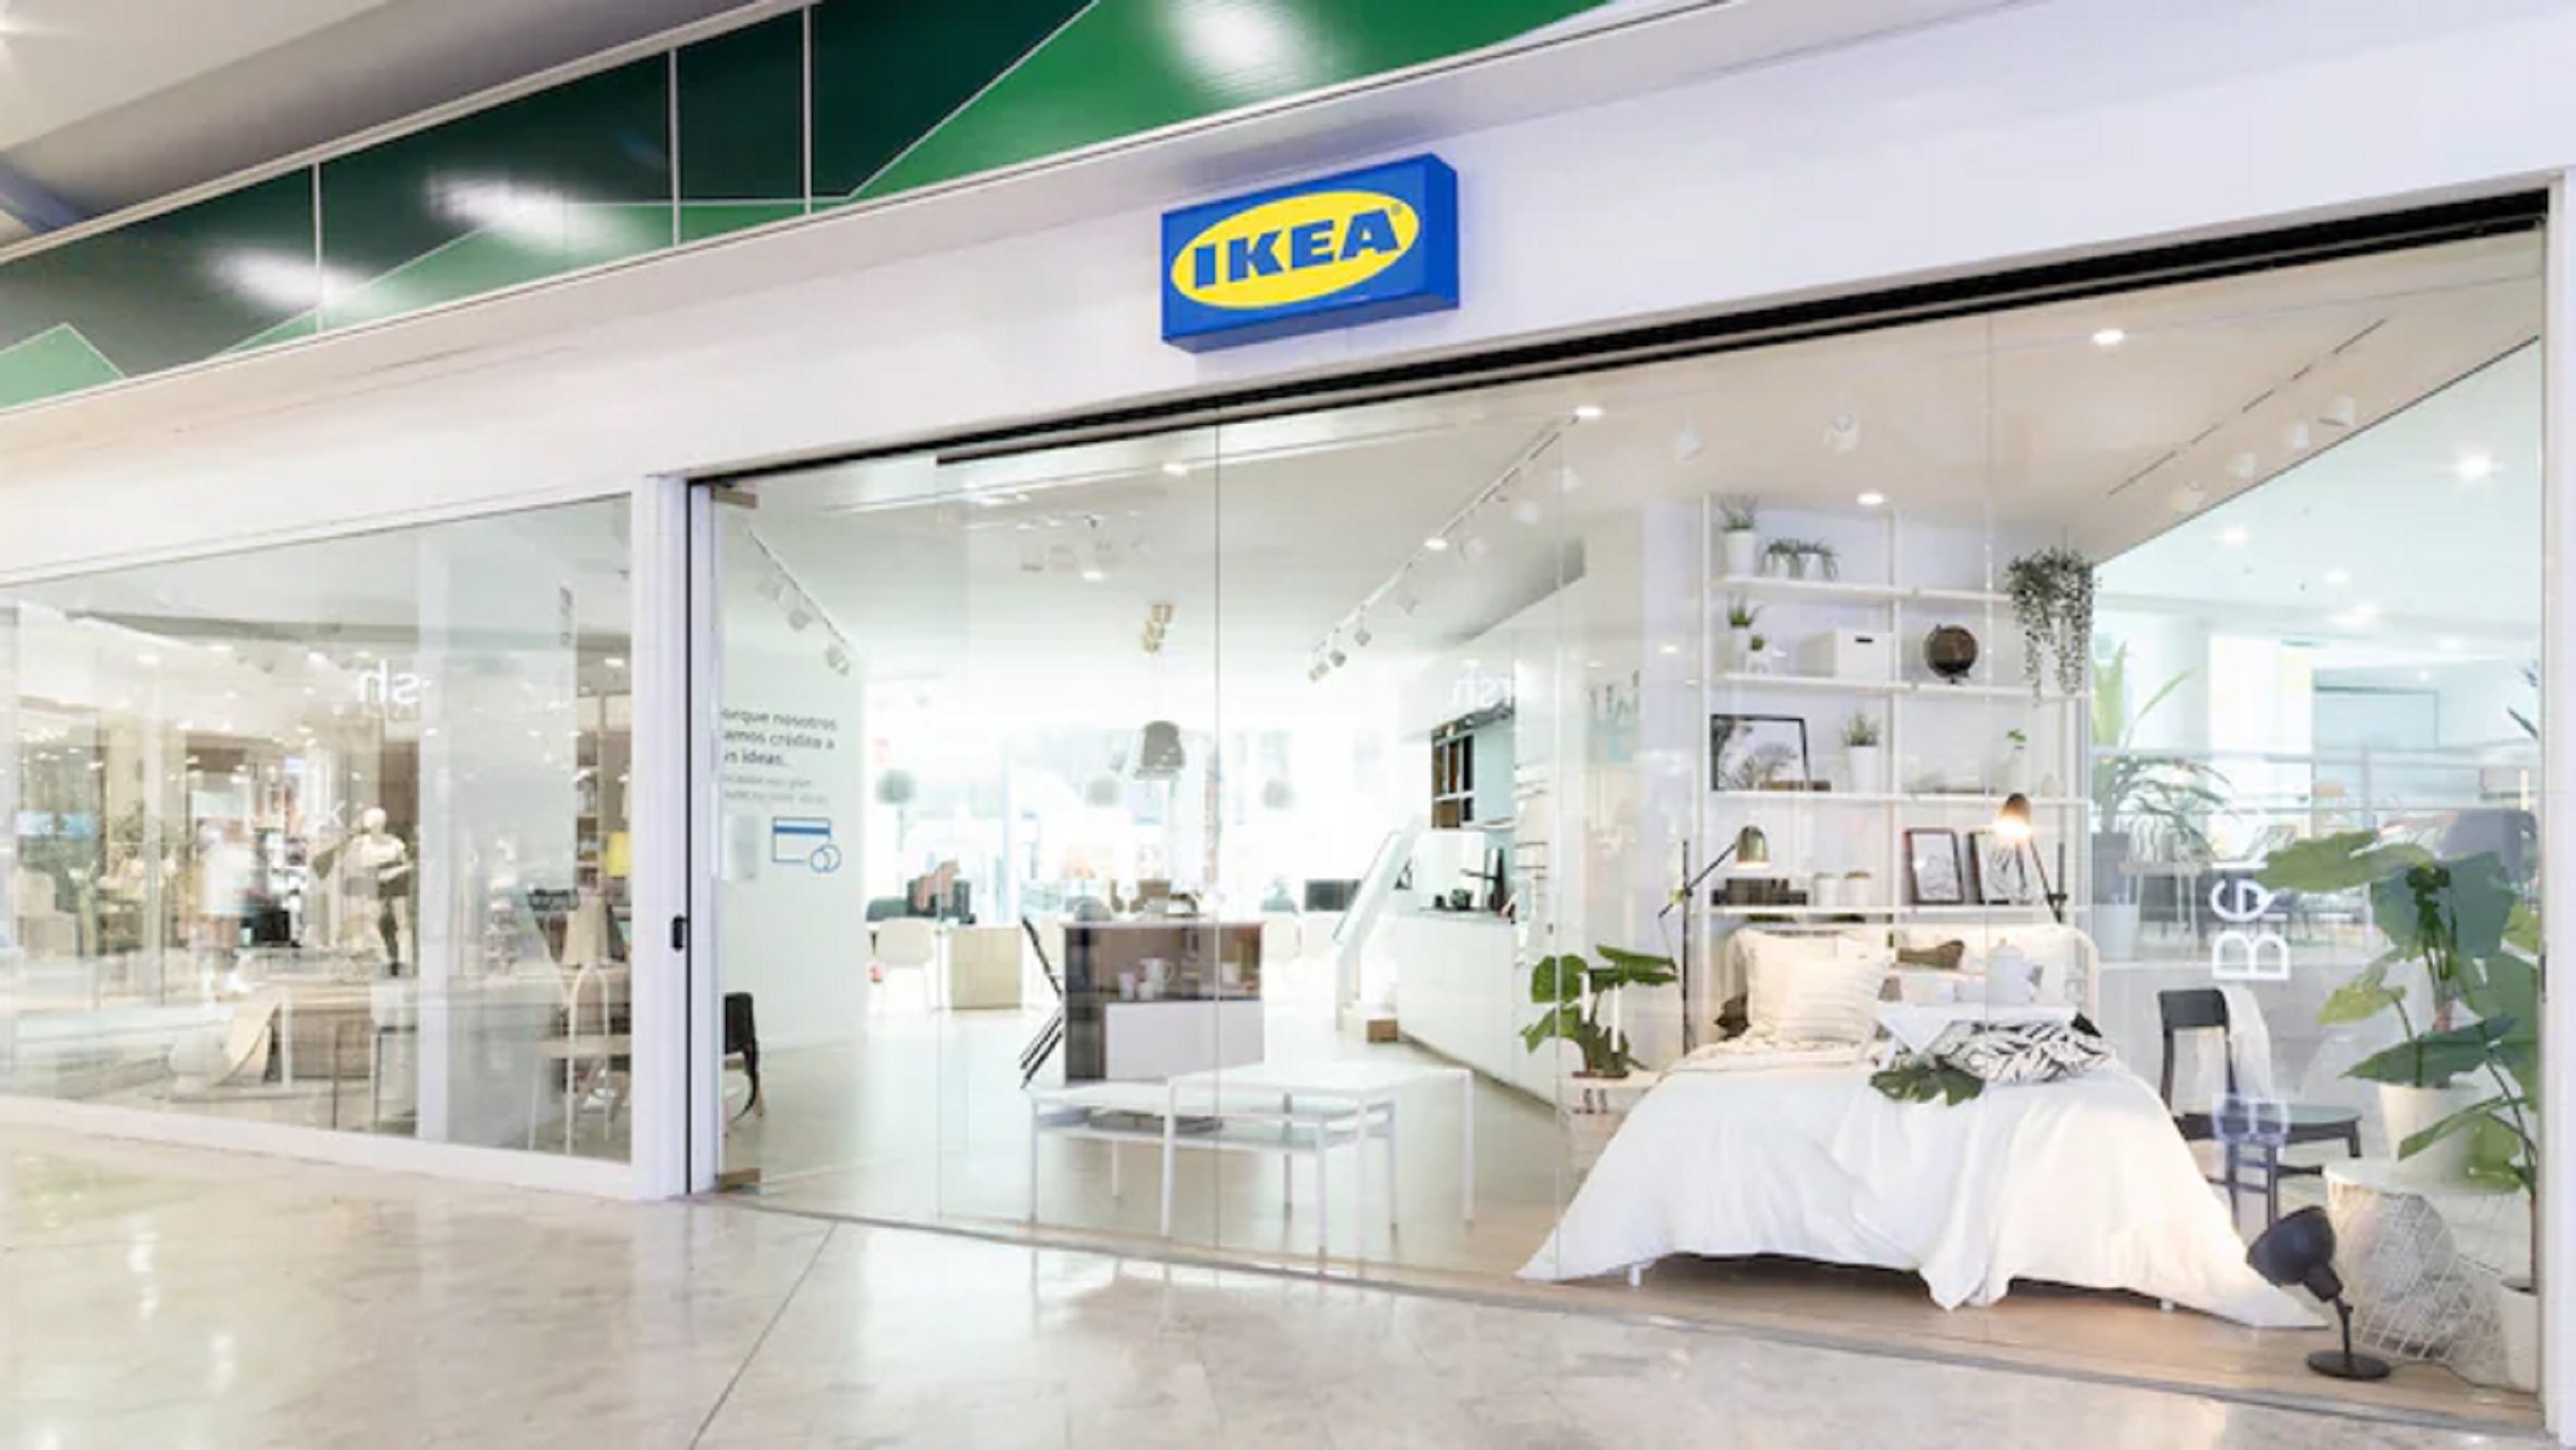 La cama más barata de Ikea cuesta 29 euros